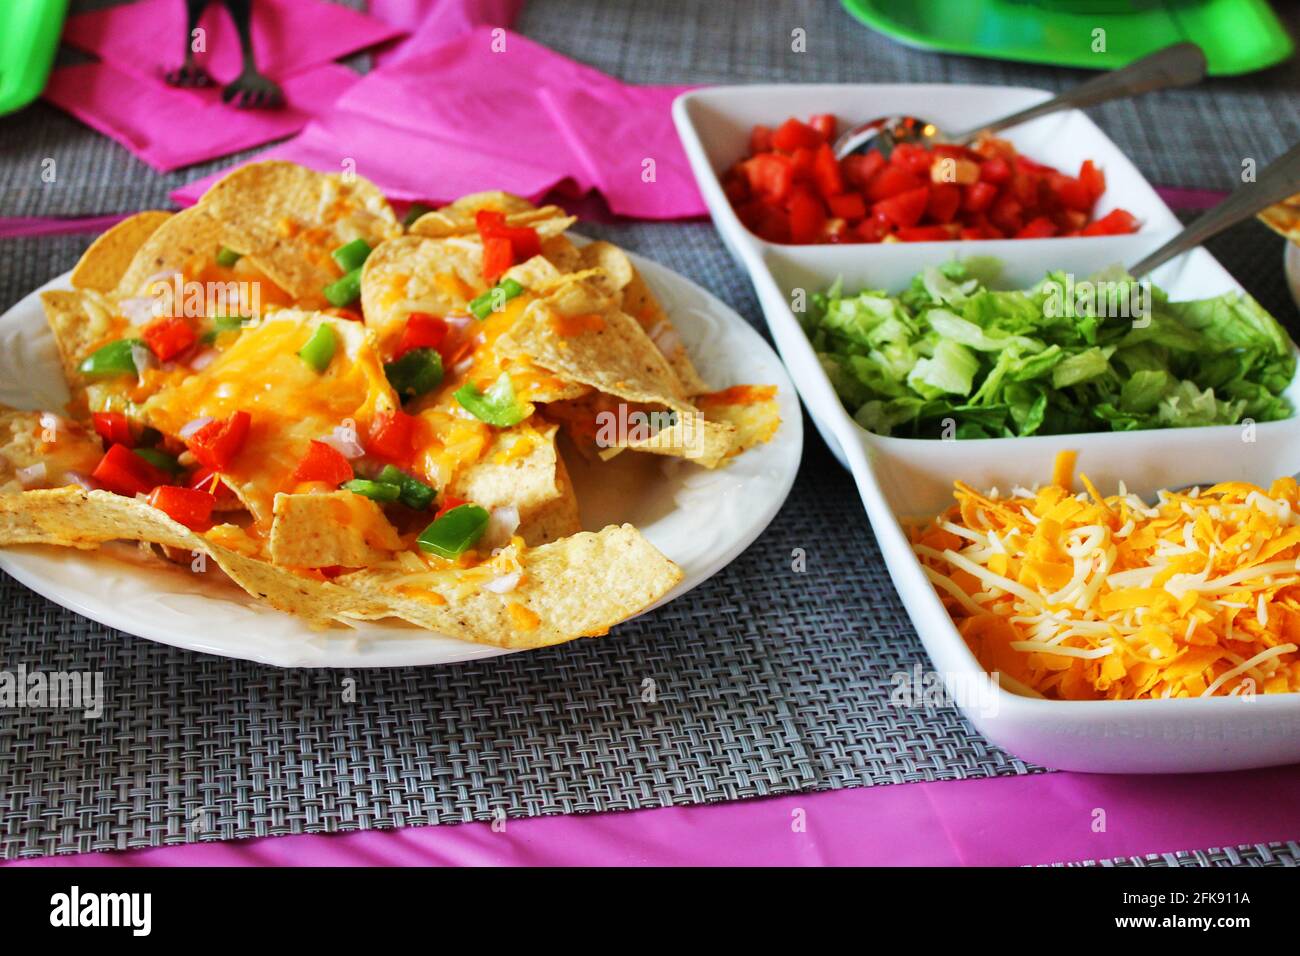 Nahaufnahme eines Tischsets für eine Party, mit Nachos, einem Teller mit Taco-Belägen, einem rosa Tischtuch und Servietten, Platzmatten und Pappteller. Stockfoto